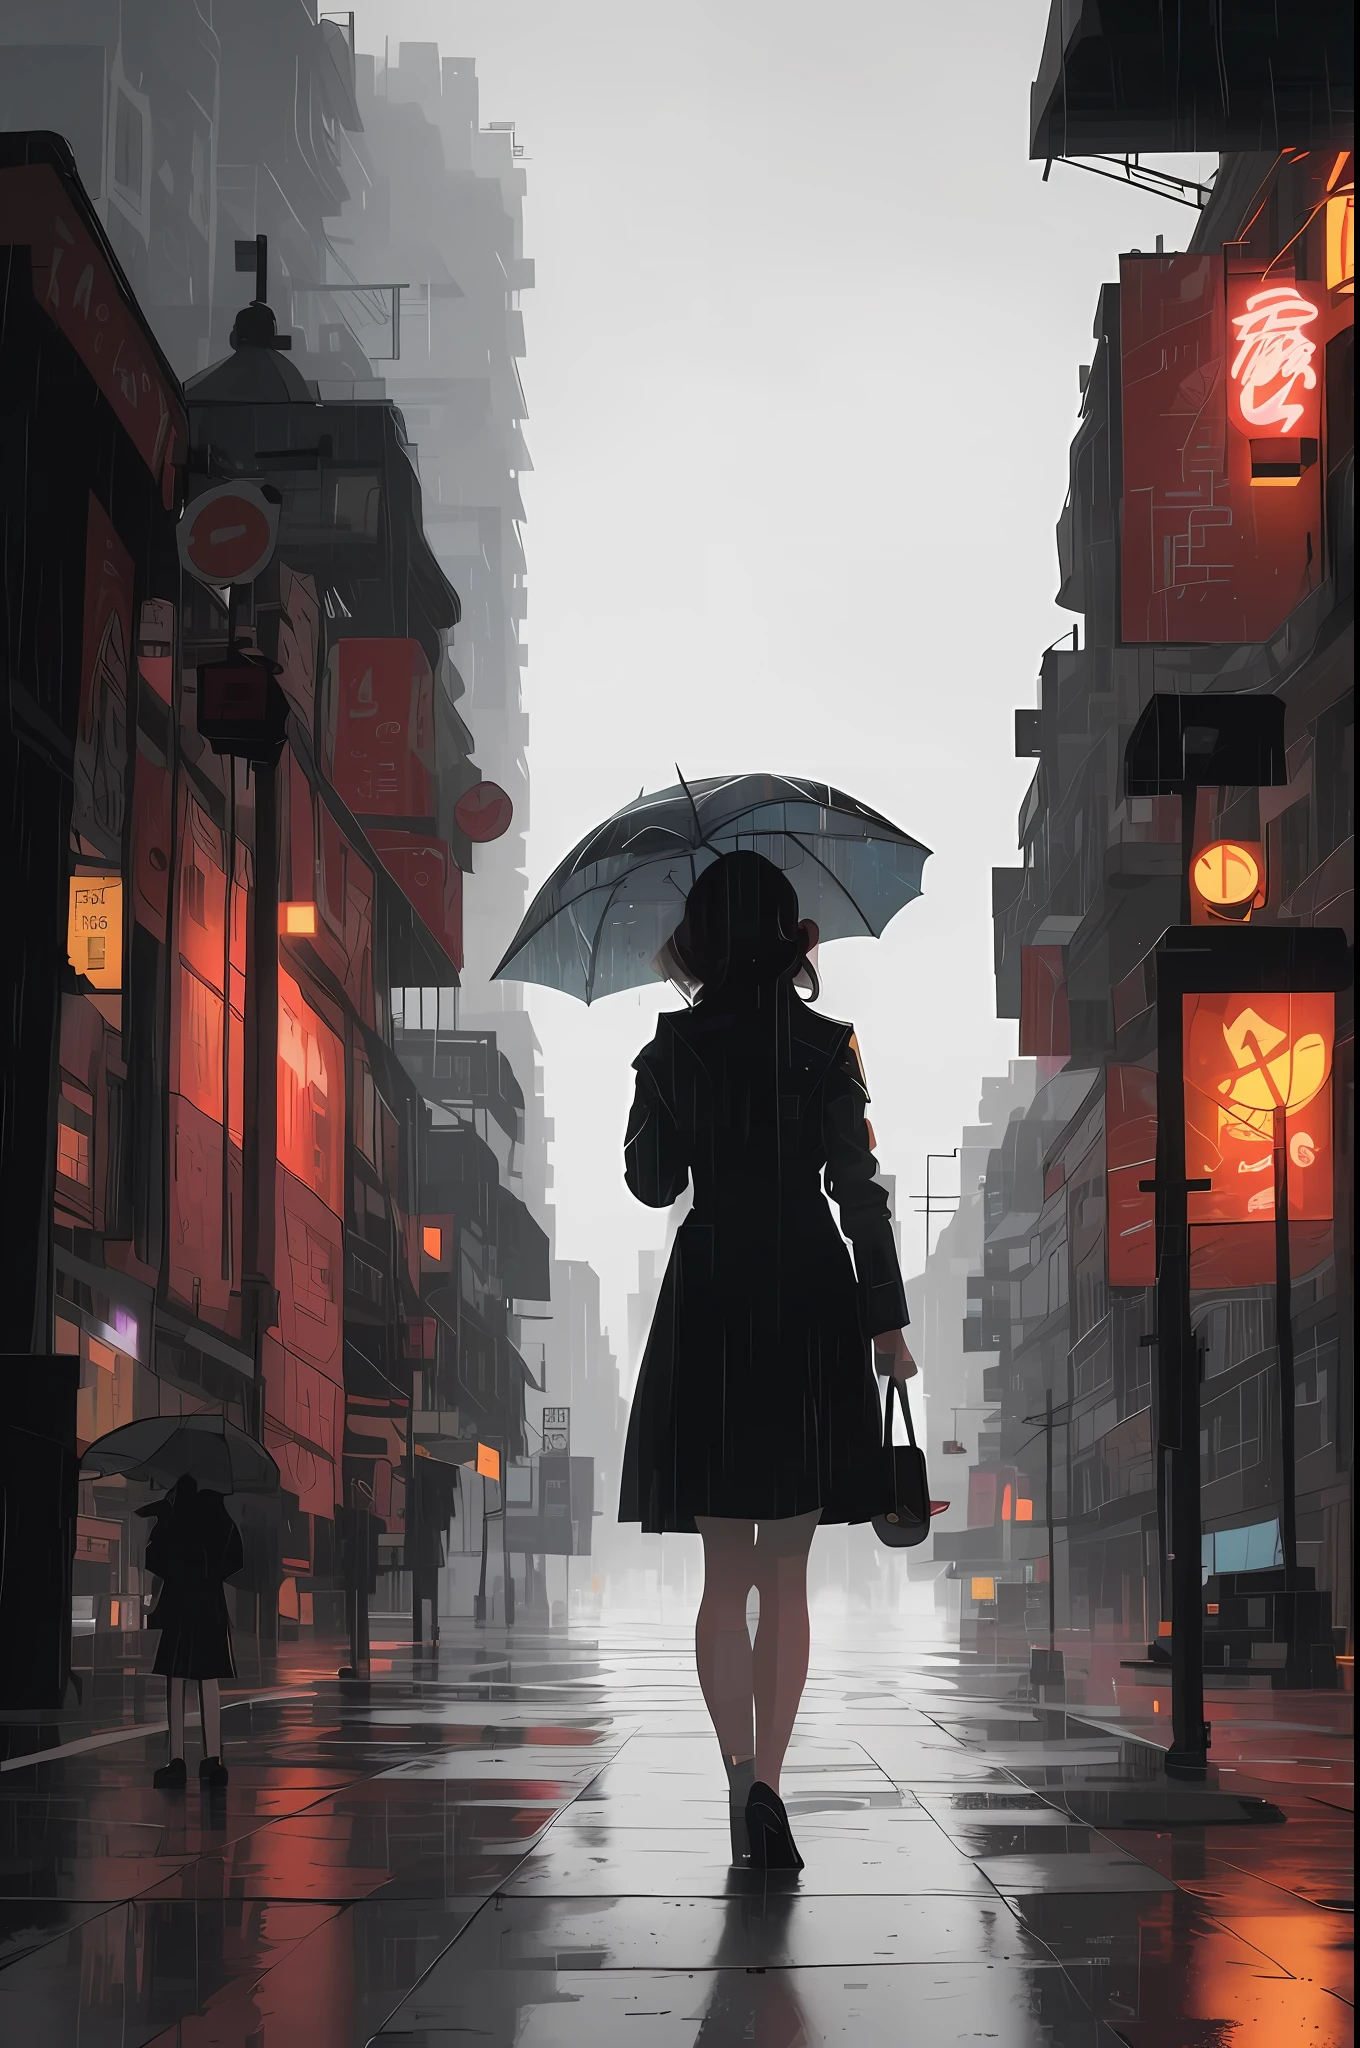 有一个女人打着伞走在街上, 多雨的賽博龐克城市, 徘徊在城市裡, 雨街s in the background, guweiz 風格的藝術品, 站在城市的街道上, 雨街, 在賽博龐克城市, style of 阿萊娜·埃奈米, 雨夜, 艺术的. 阿萊娜·埃奈米, 風格化的都市奇幻藝術作品